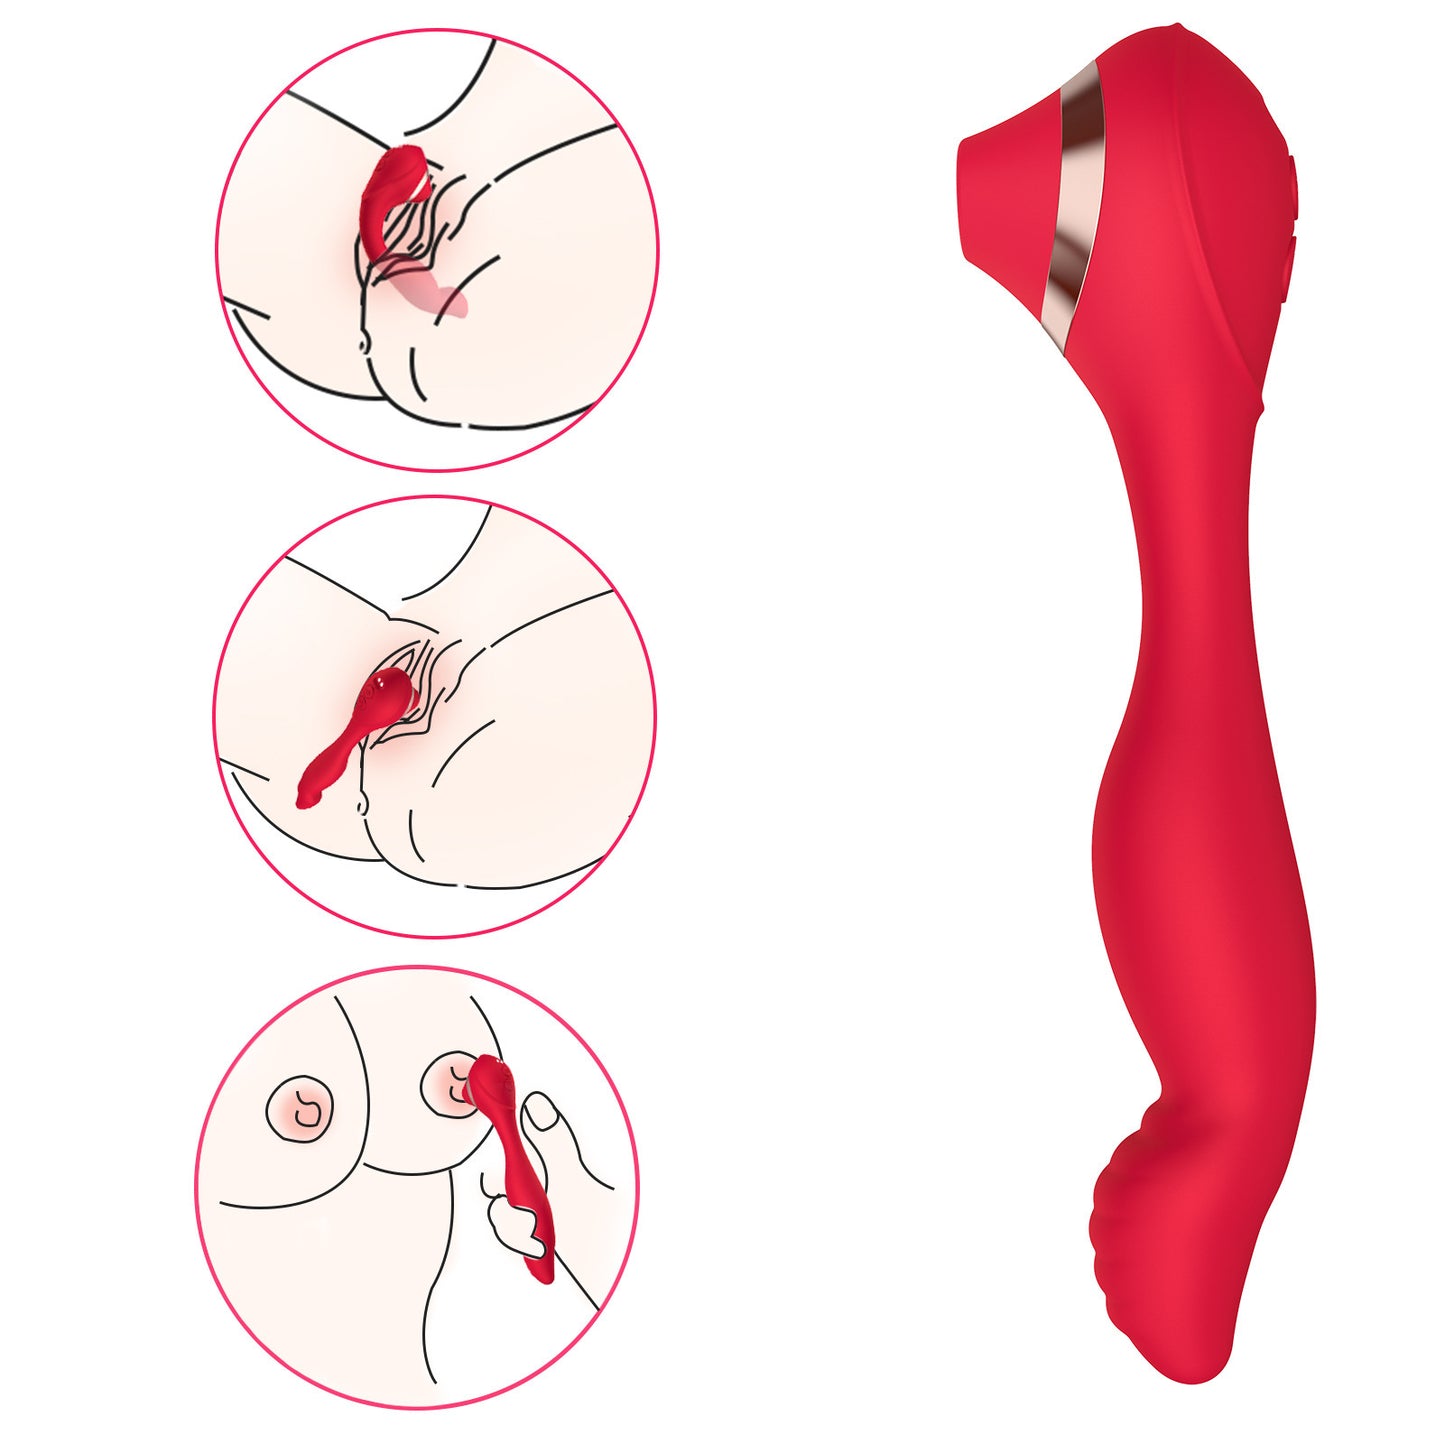 Clit Sucker G Spot Vibrator - Finger Prostate Massager Female Sex Toys